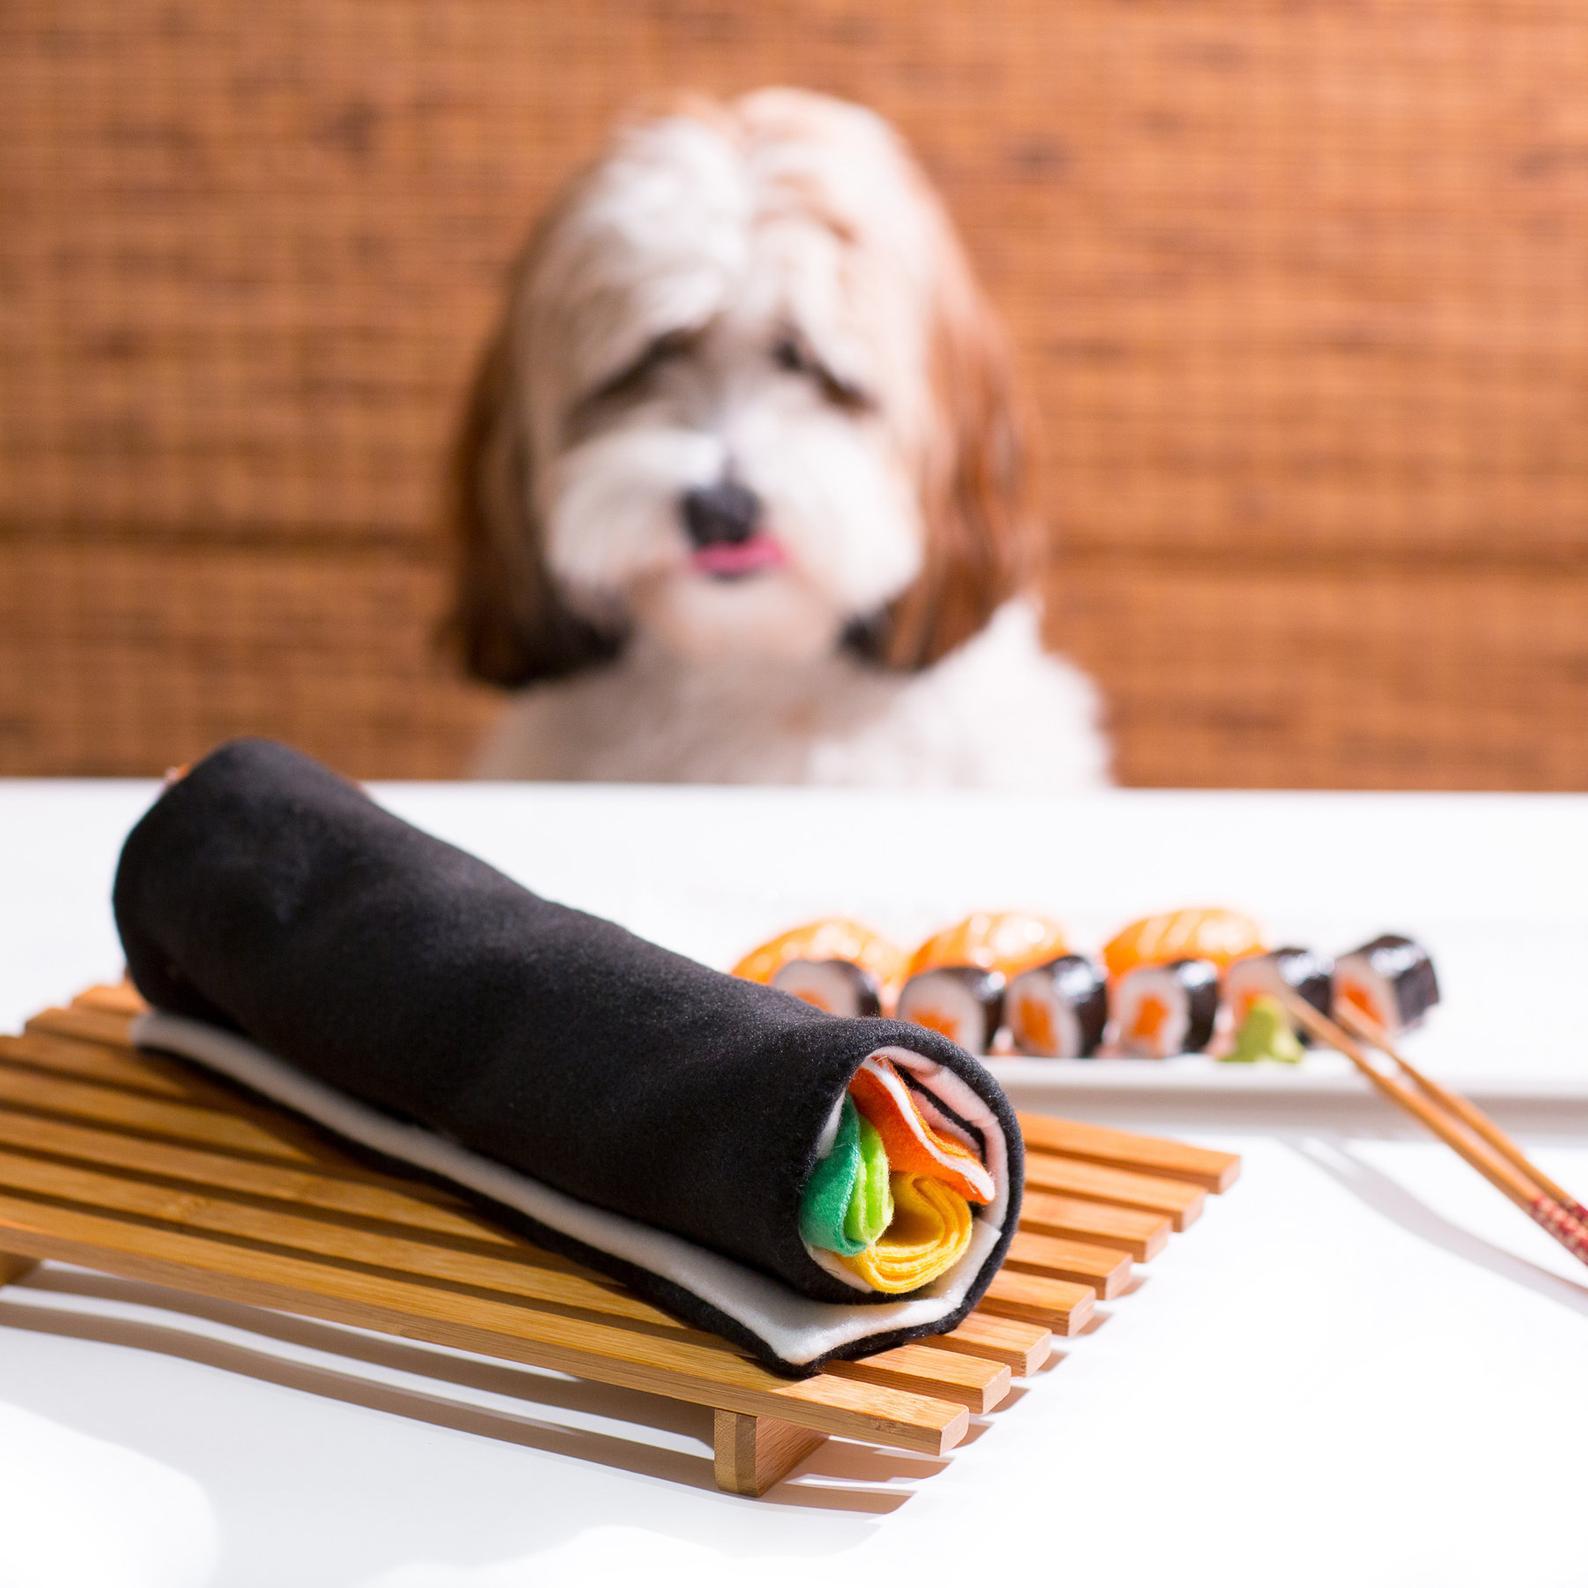 PawRoll Dog Snuffle Feeding Mat – Paw Roll